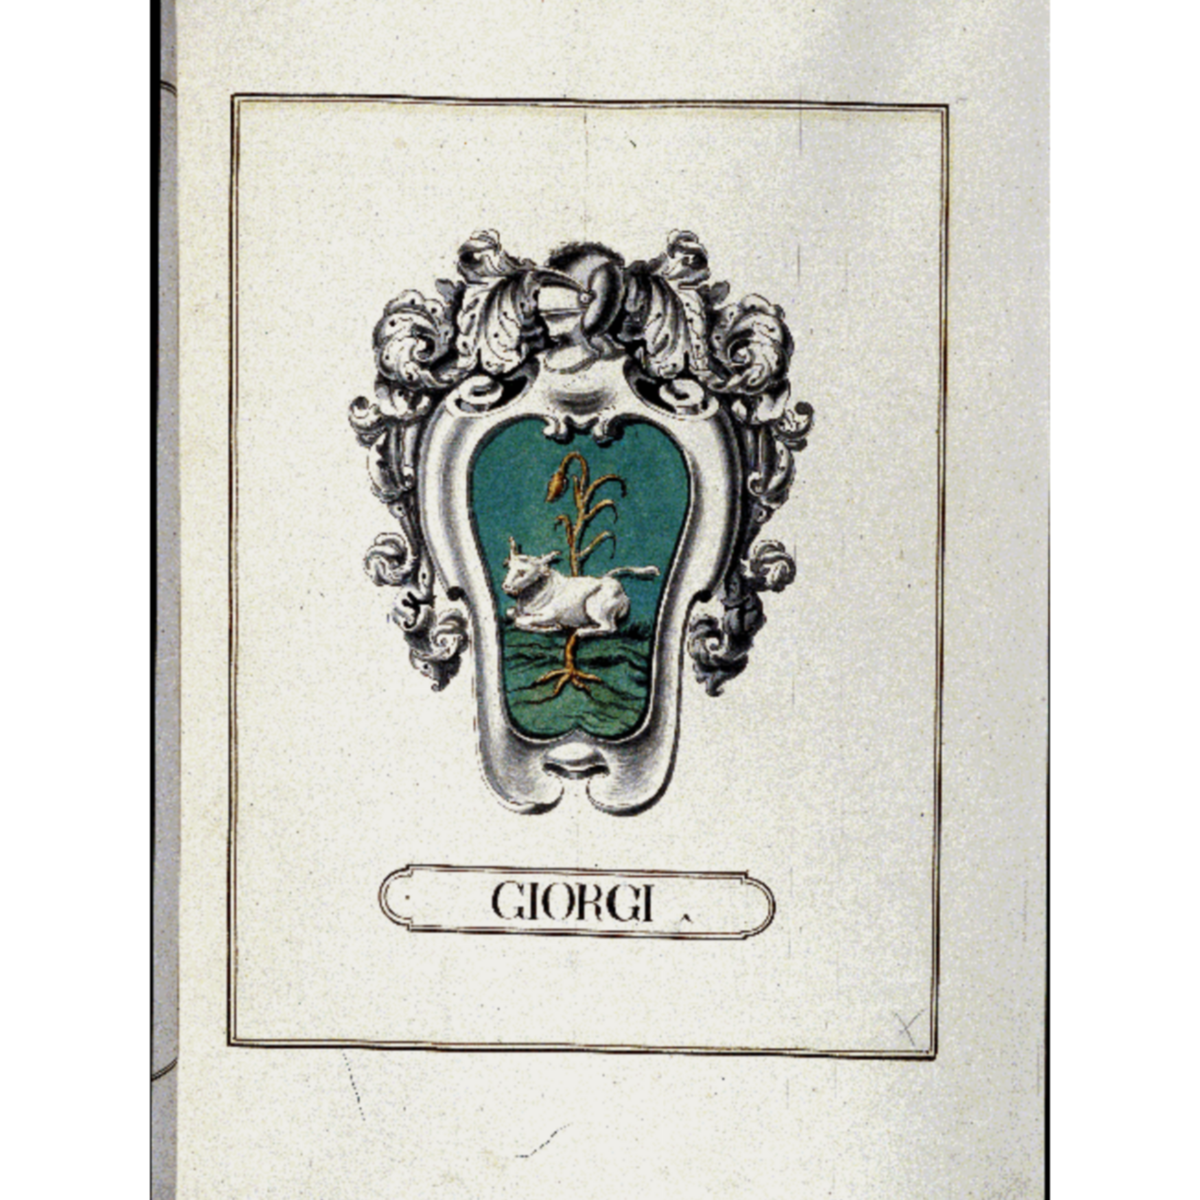 Coat of arms of familyGiorgi, de Giorgi,Georgiani,Georgio,Georgius,Giorgi da Romena,Giorgi de Pons,Giorgi del Lion d'Oro,Giorgiani,Giorgianni,Zorzi